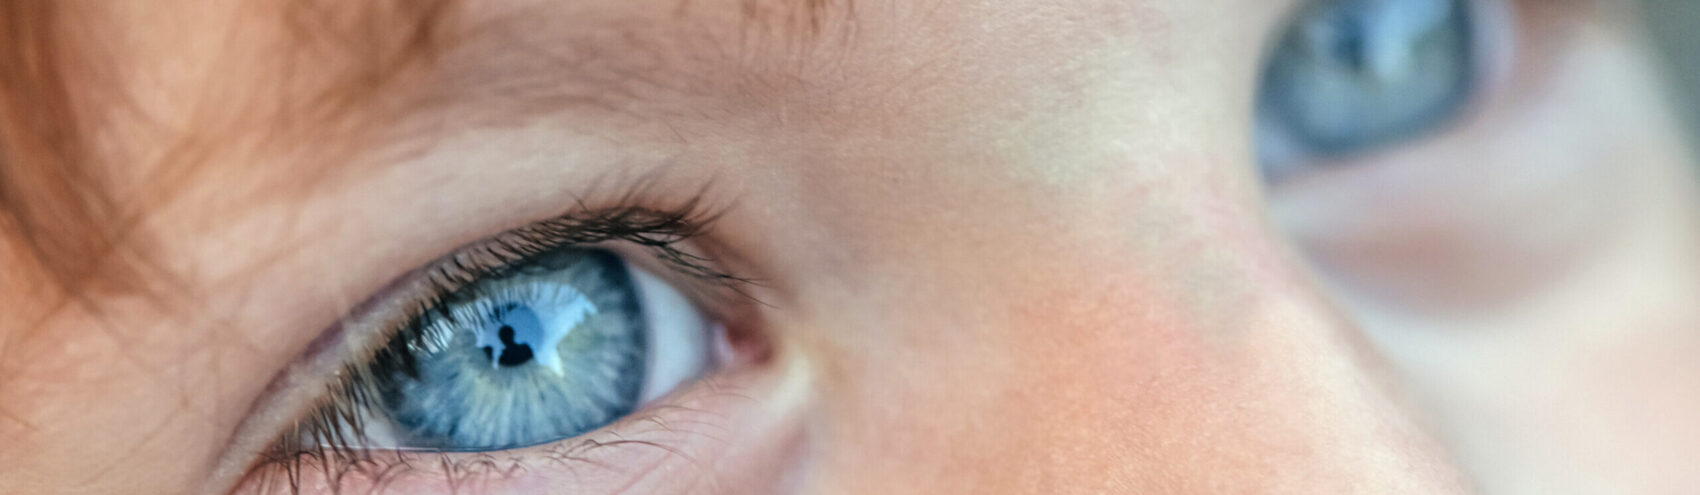 Soorten netvlieskanker en anatomie van het oog